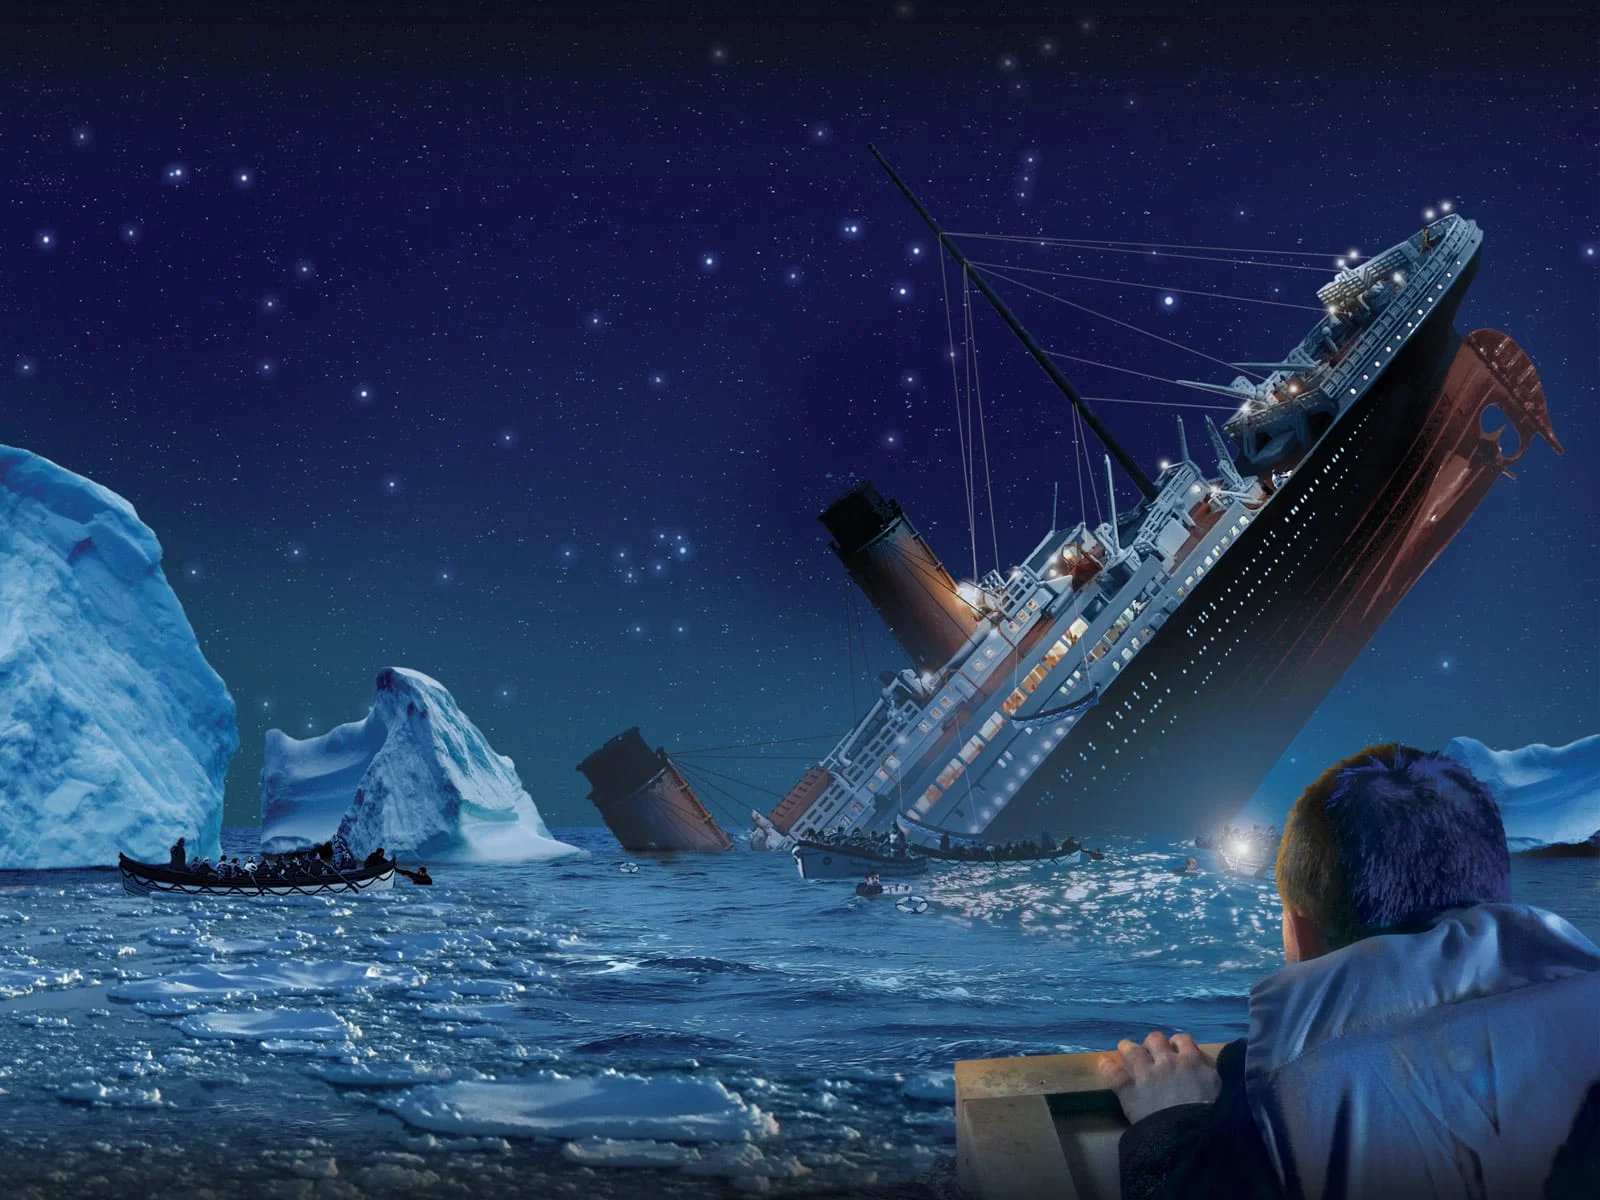 Titanic Sinking near Iceberg